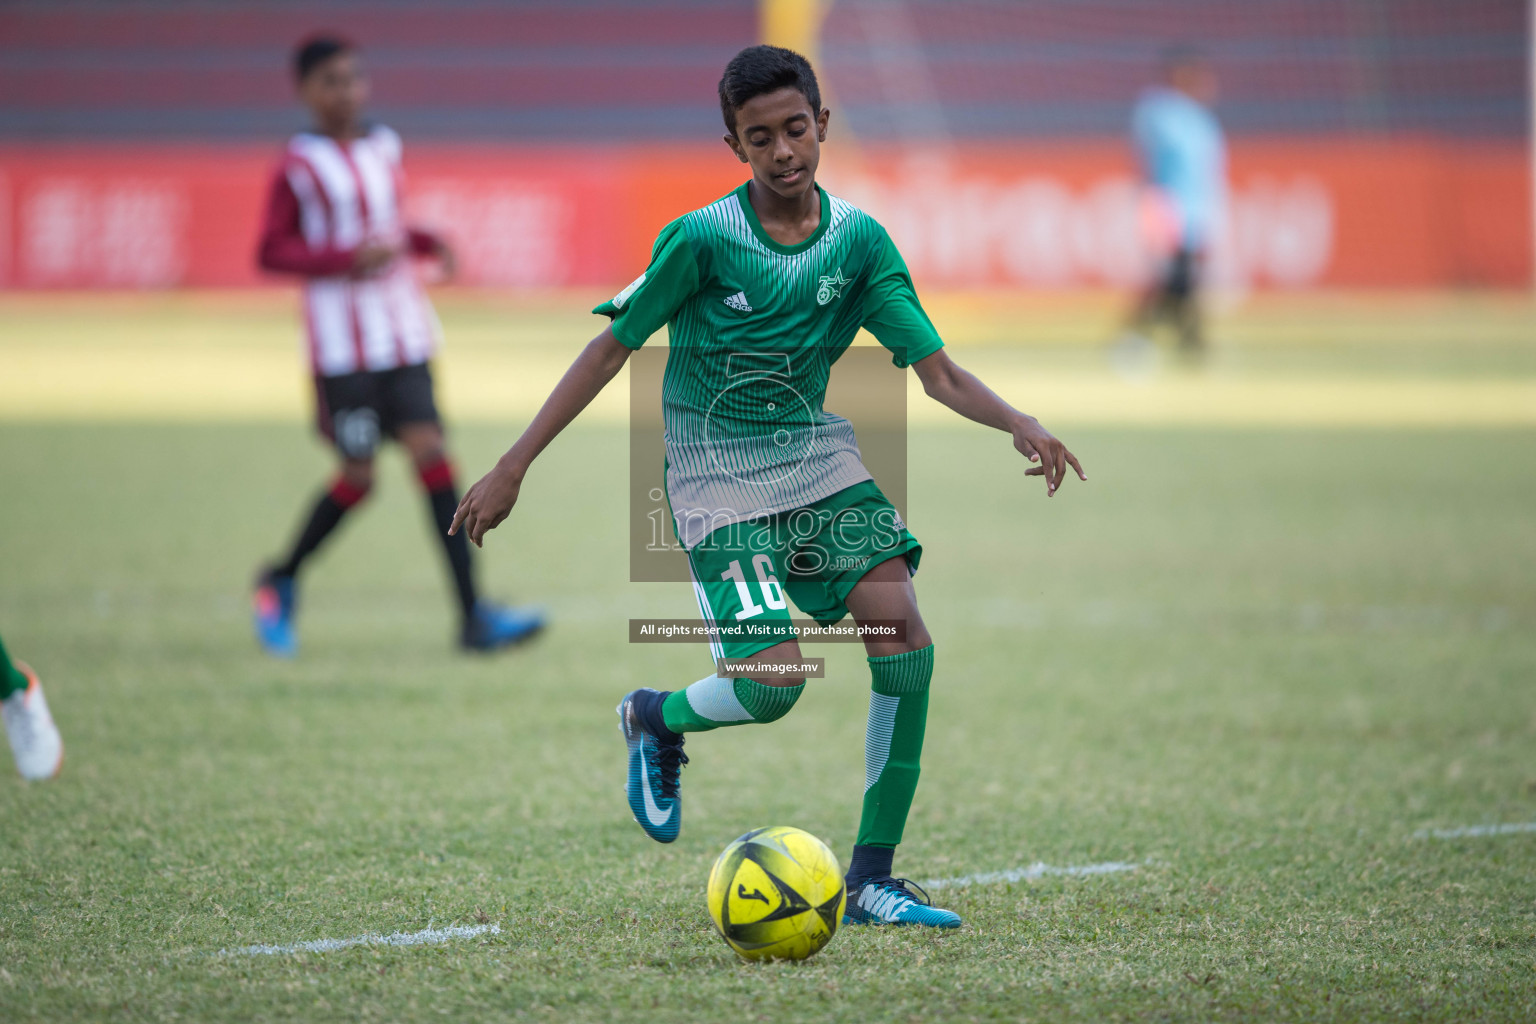 Aminiya School vs Muhyiddin School in MAMEN Inter School Football Tournament 2019 (U13) in Male, Maldives on 26th March 2019, Photos: Suadh Abdul Sattar / images.mv